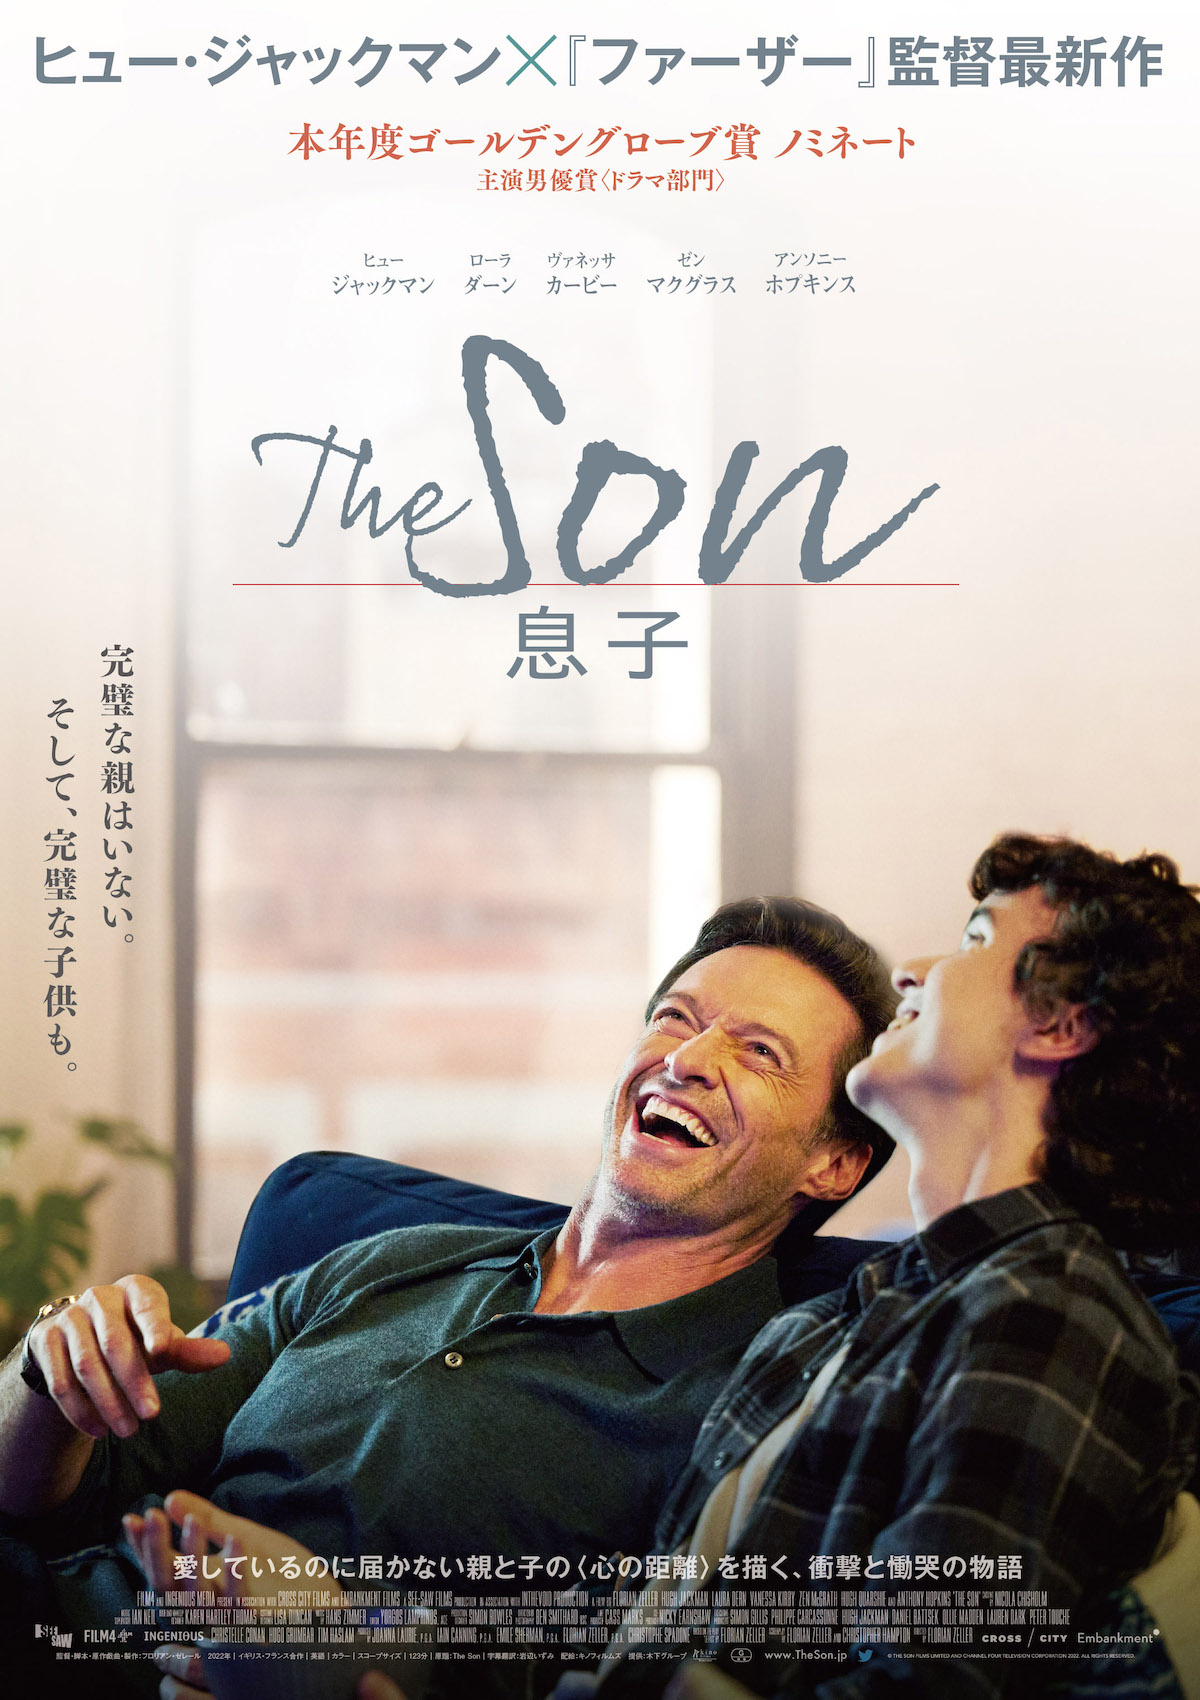 映画『The Son／息子』のポスタービジュアル・予告映像・場面写真が一挙解禁—完璧な親はいない。そして、完璧な子供も